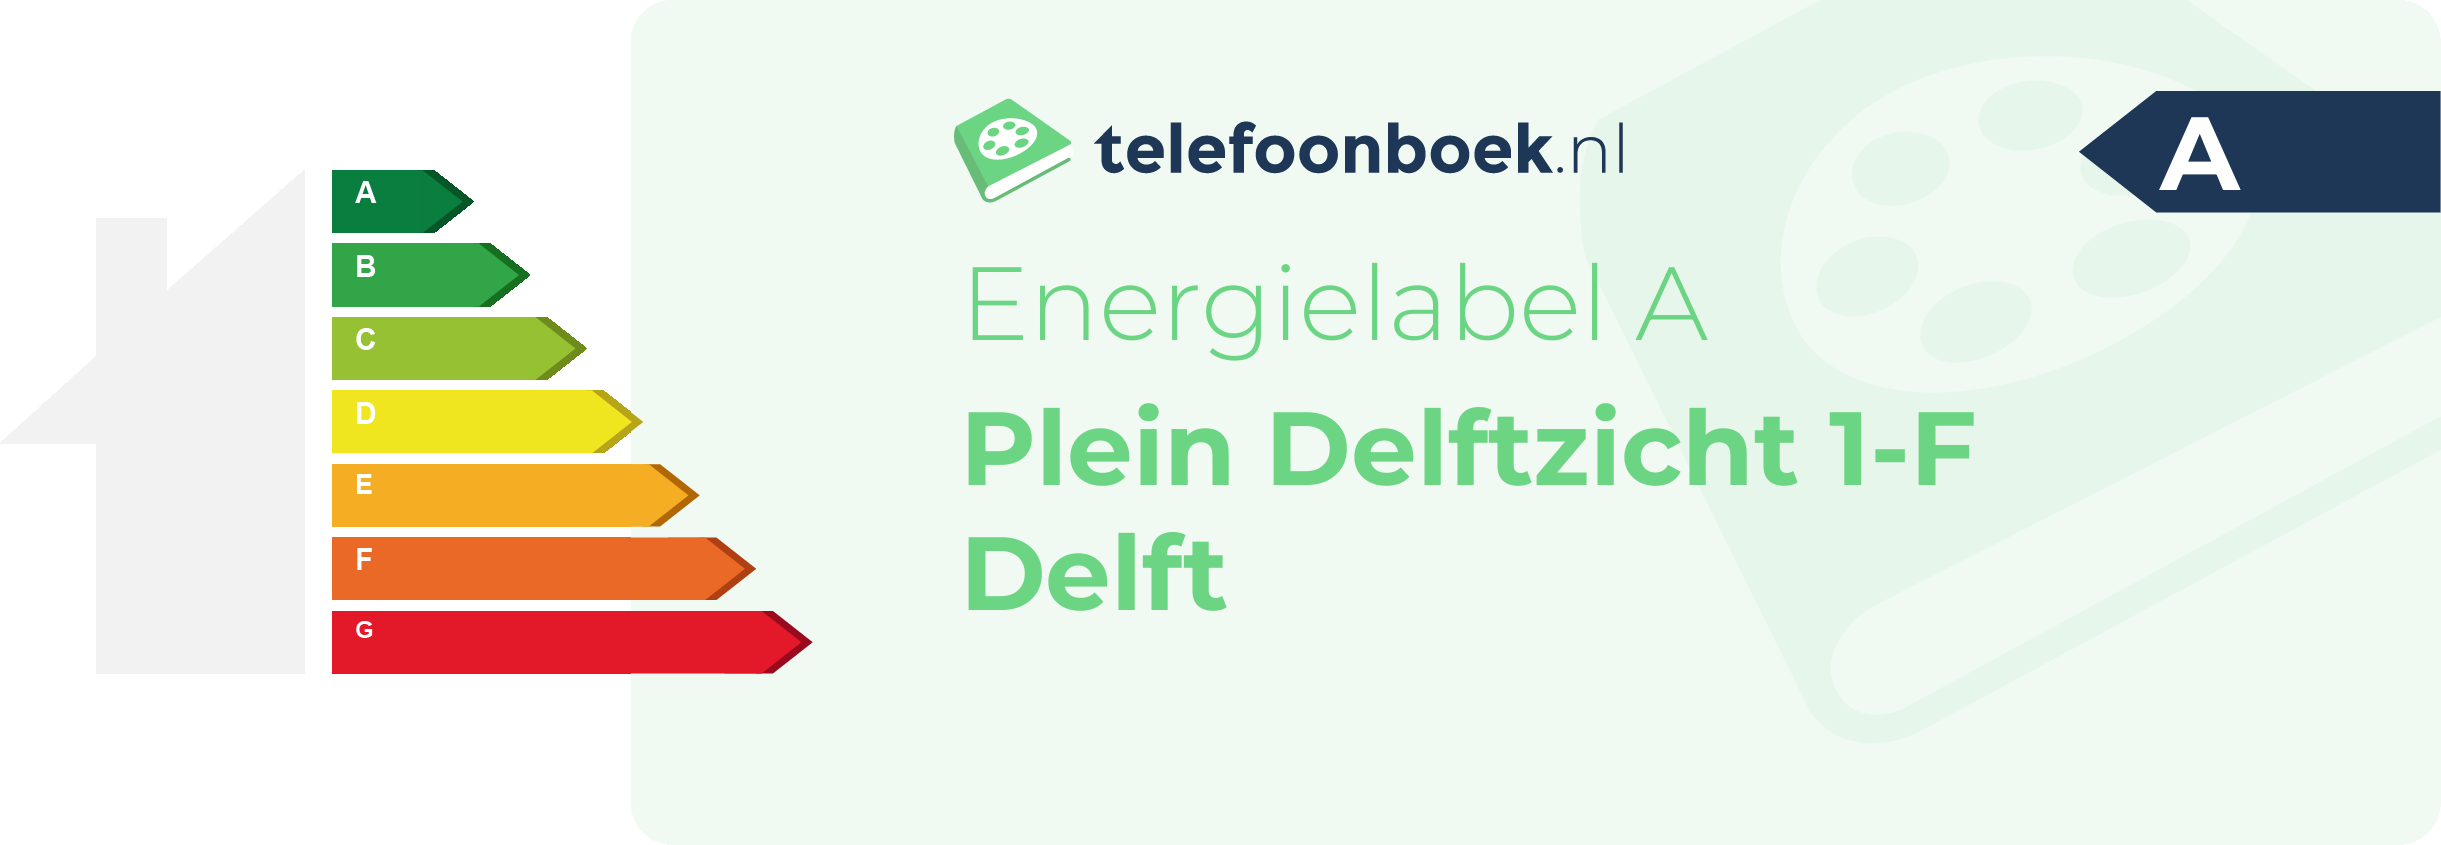 Energielabel Plein Delftzicht 1-F Delft